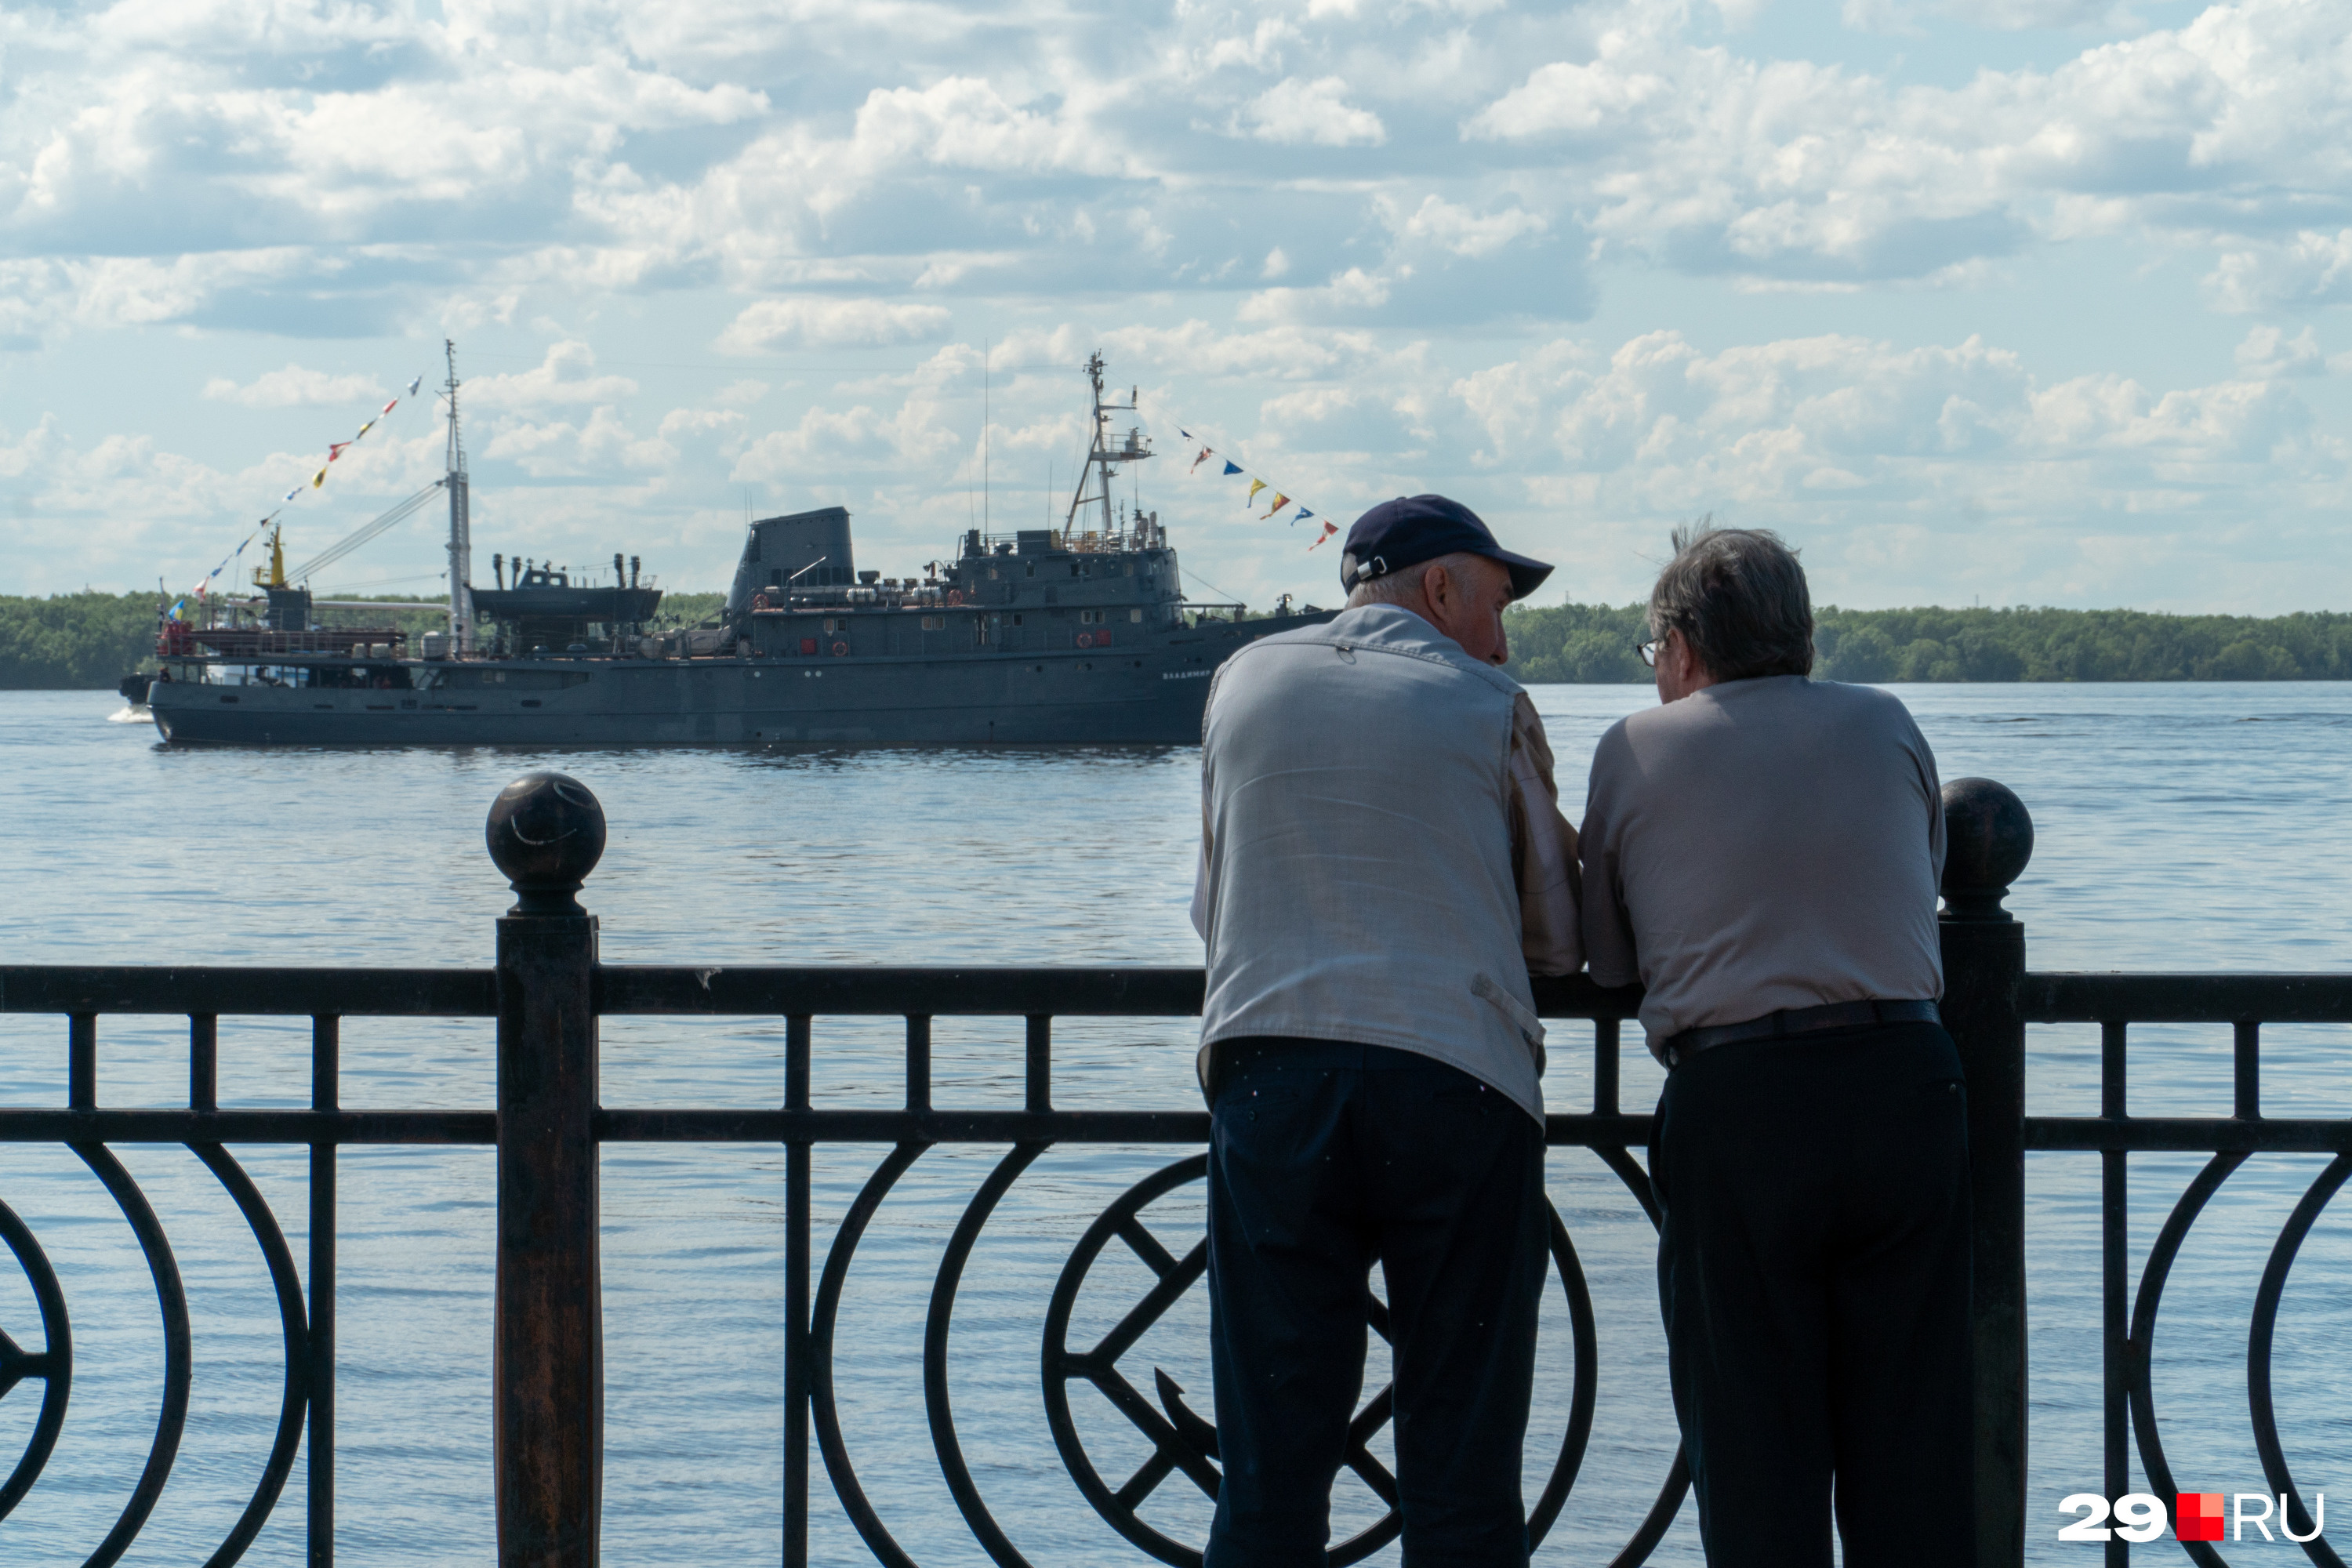 Жители Архангельска вышли на набережную — не каждый день на Северной Двине стоят военные корабли